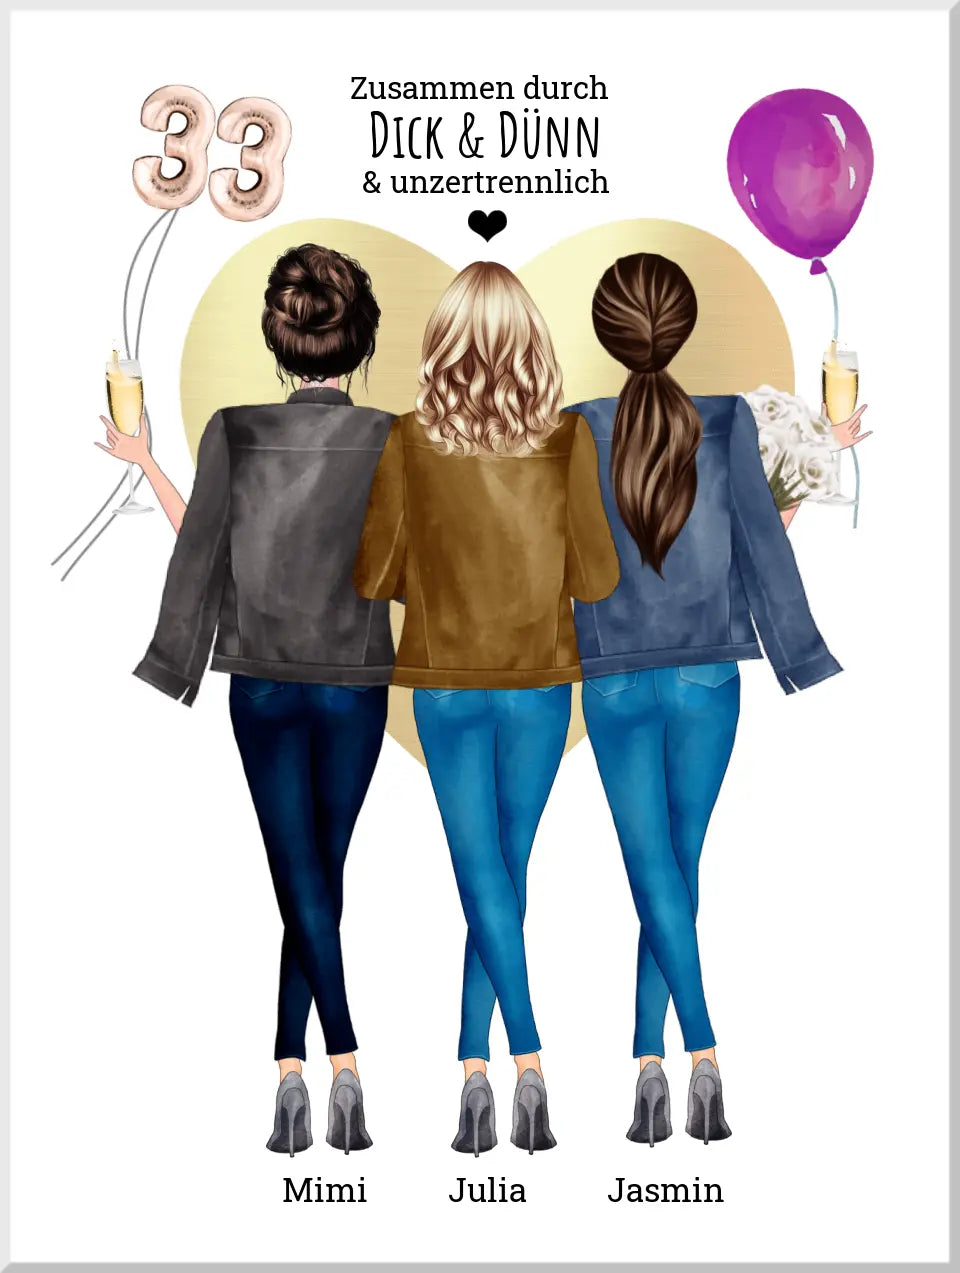 Personalisiertes Geschenk Freundin Geburtstag -Freundinnen Geburtstag Poster, 3 Freundinnen Bild Geschenk - Weihnachtsgeschenk